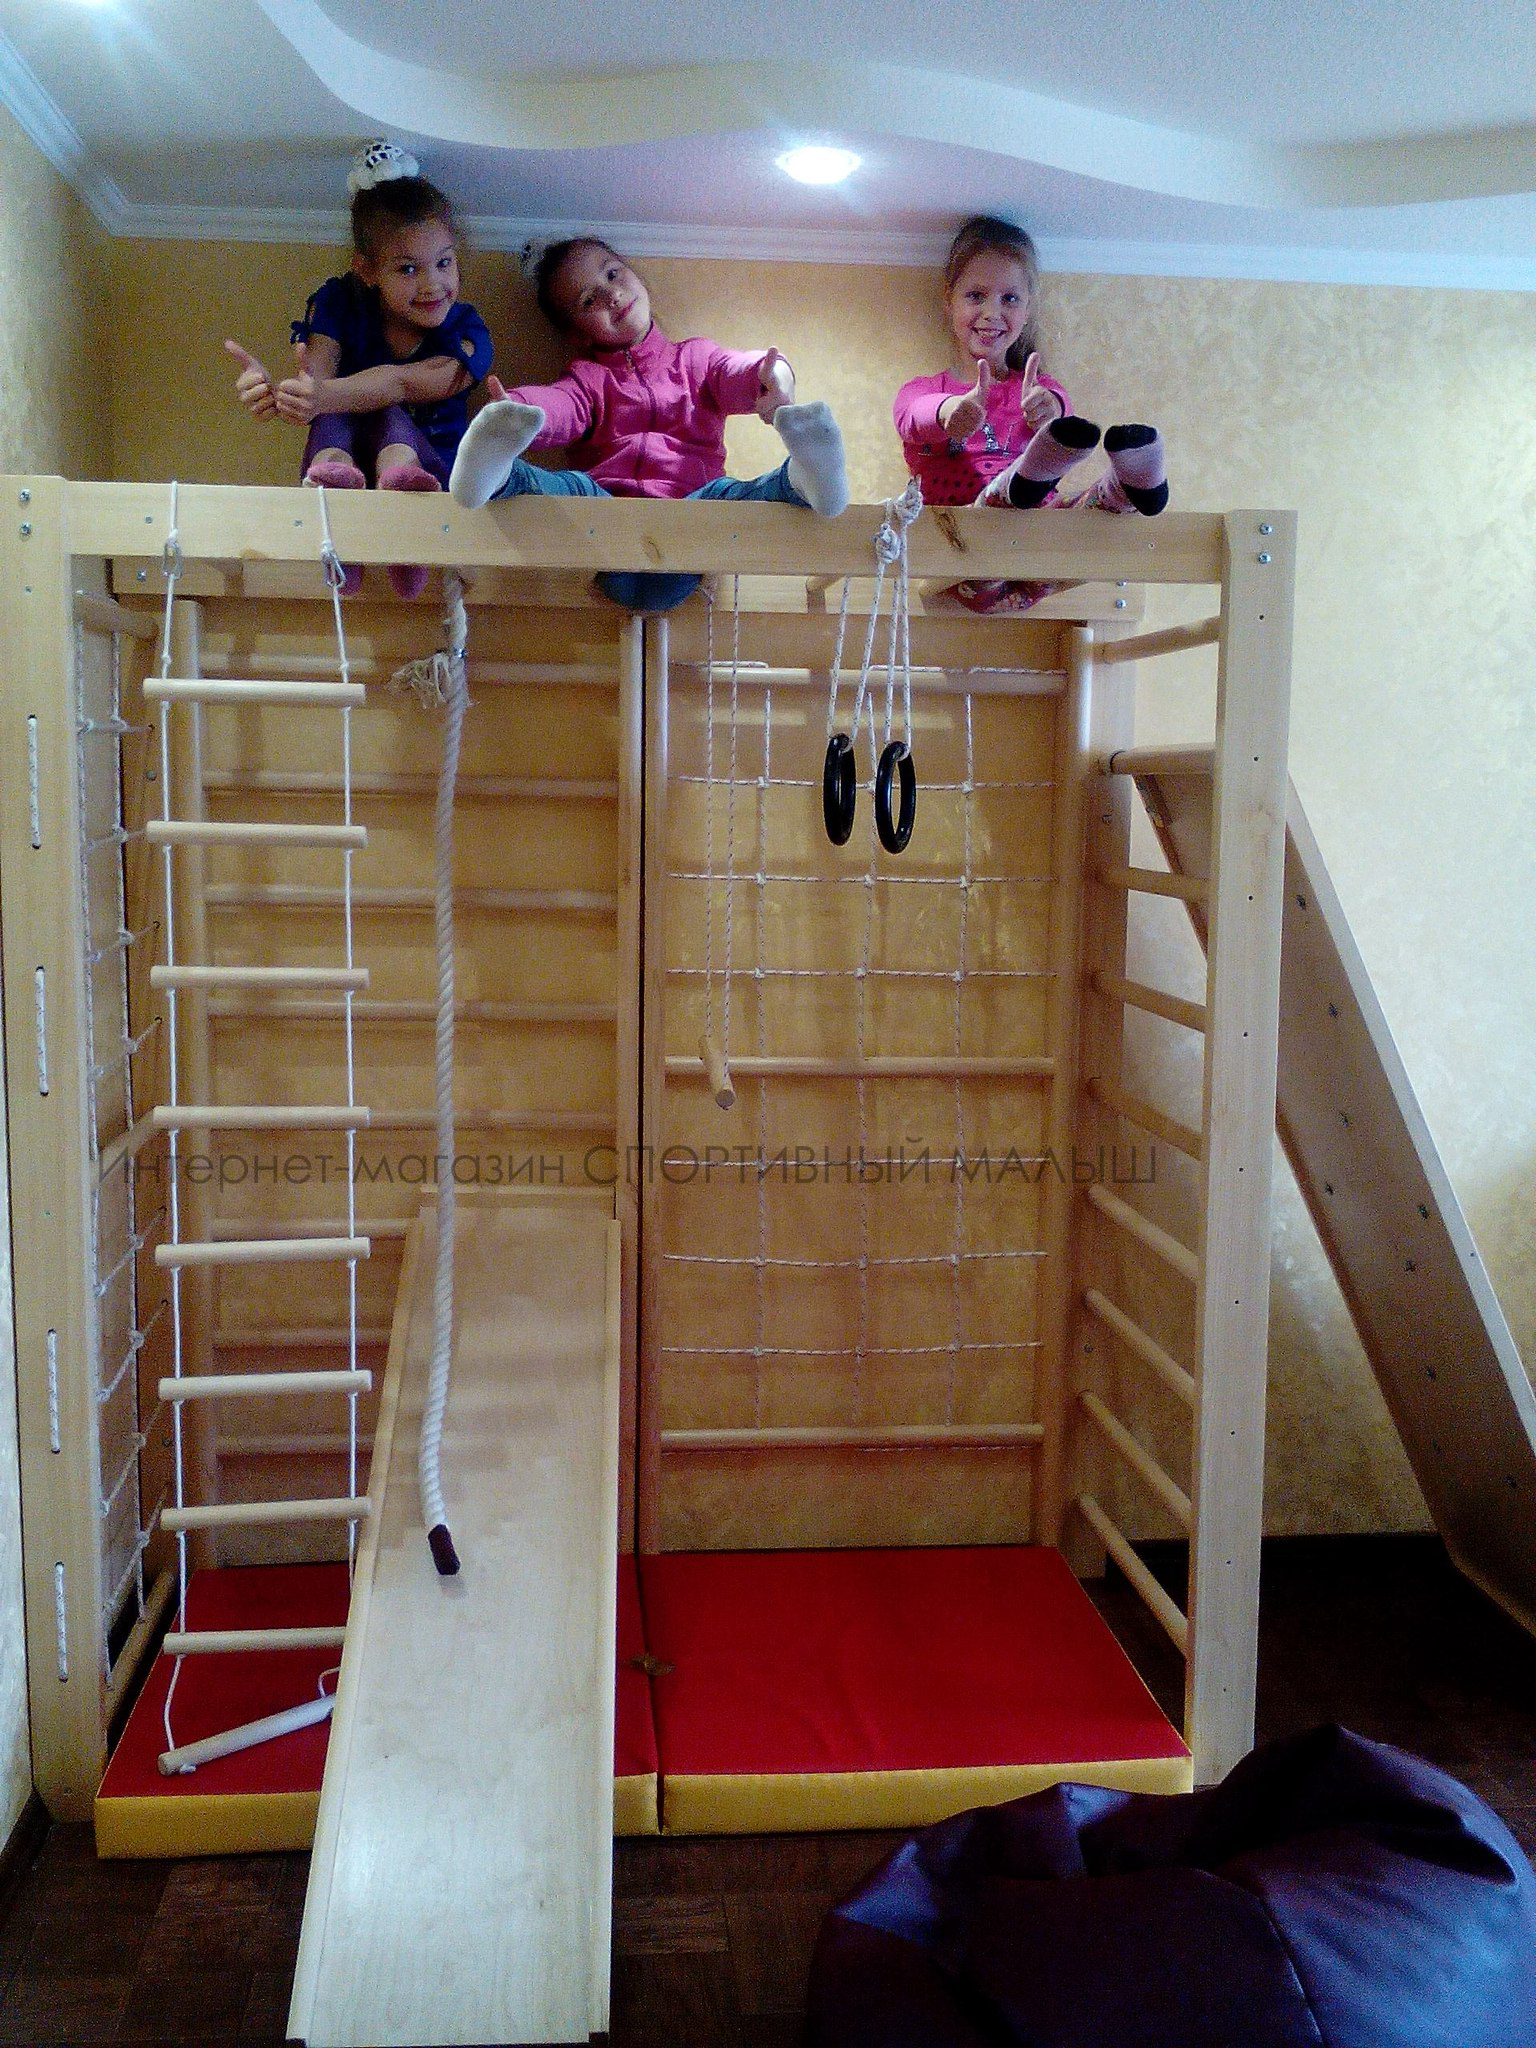 фото-отчет покупательницы магазина Спортивный Малыш dsk-detki.ru о детском комплексе для домашнего использования ДСК Памир.